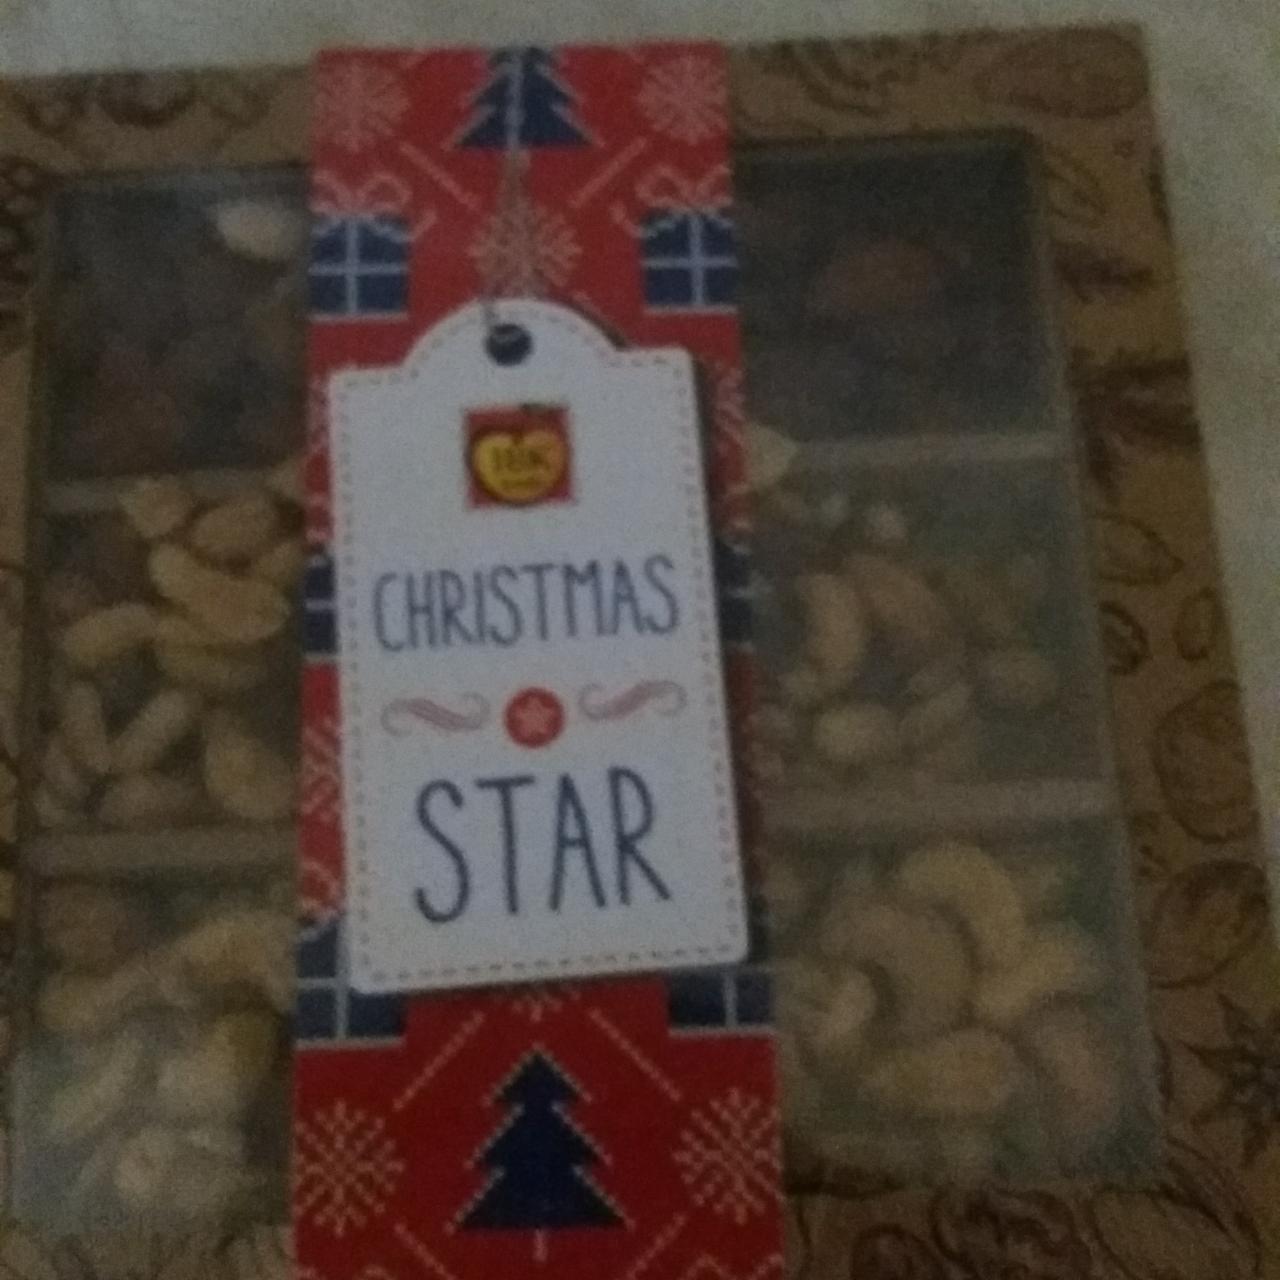 Fotografie - Christmas star - směs uzených a pražených ořechů IBK trade